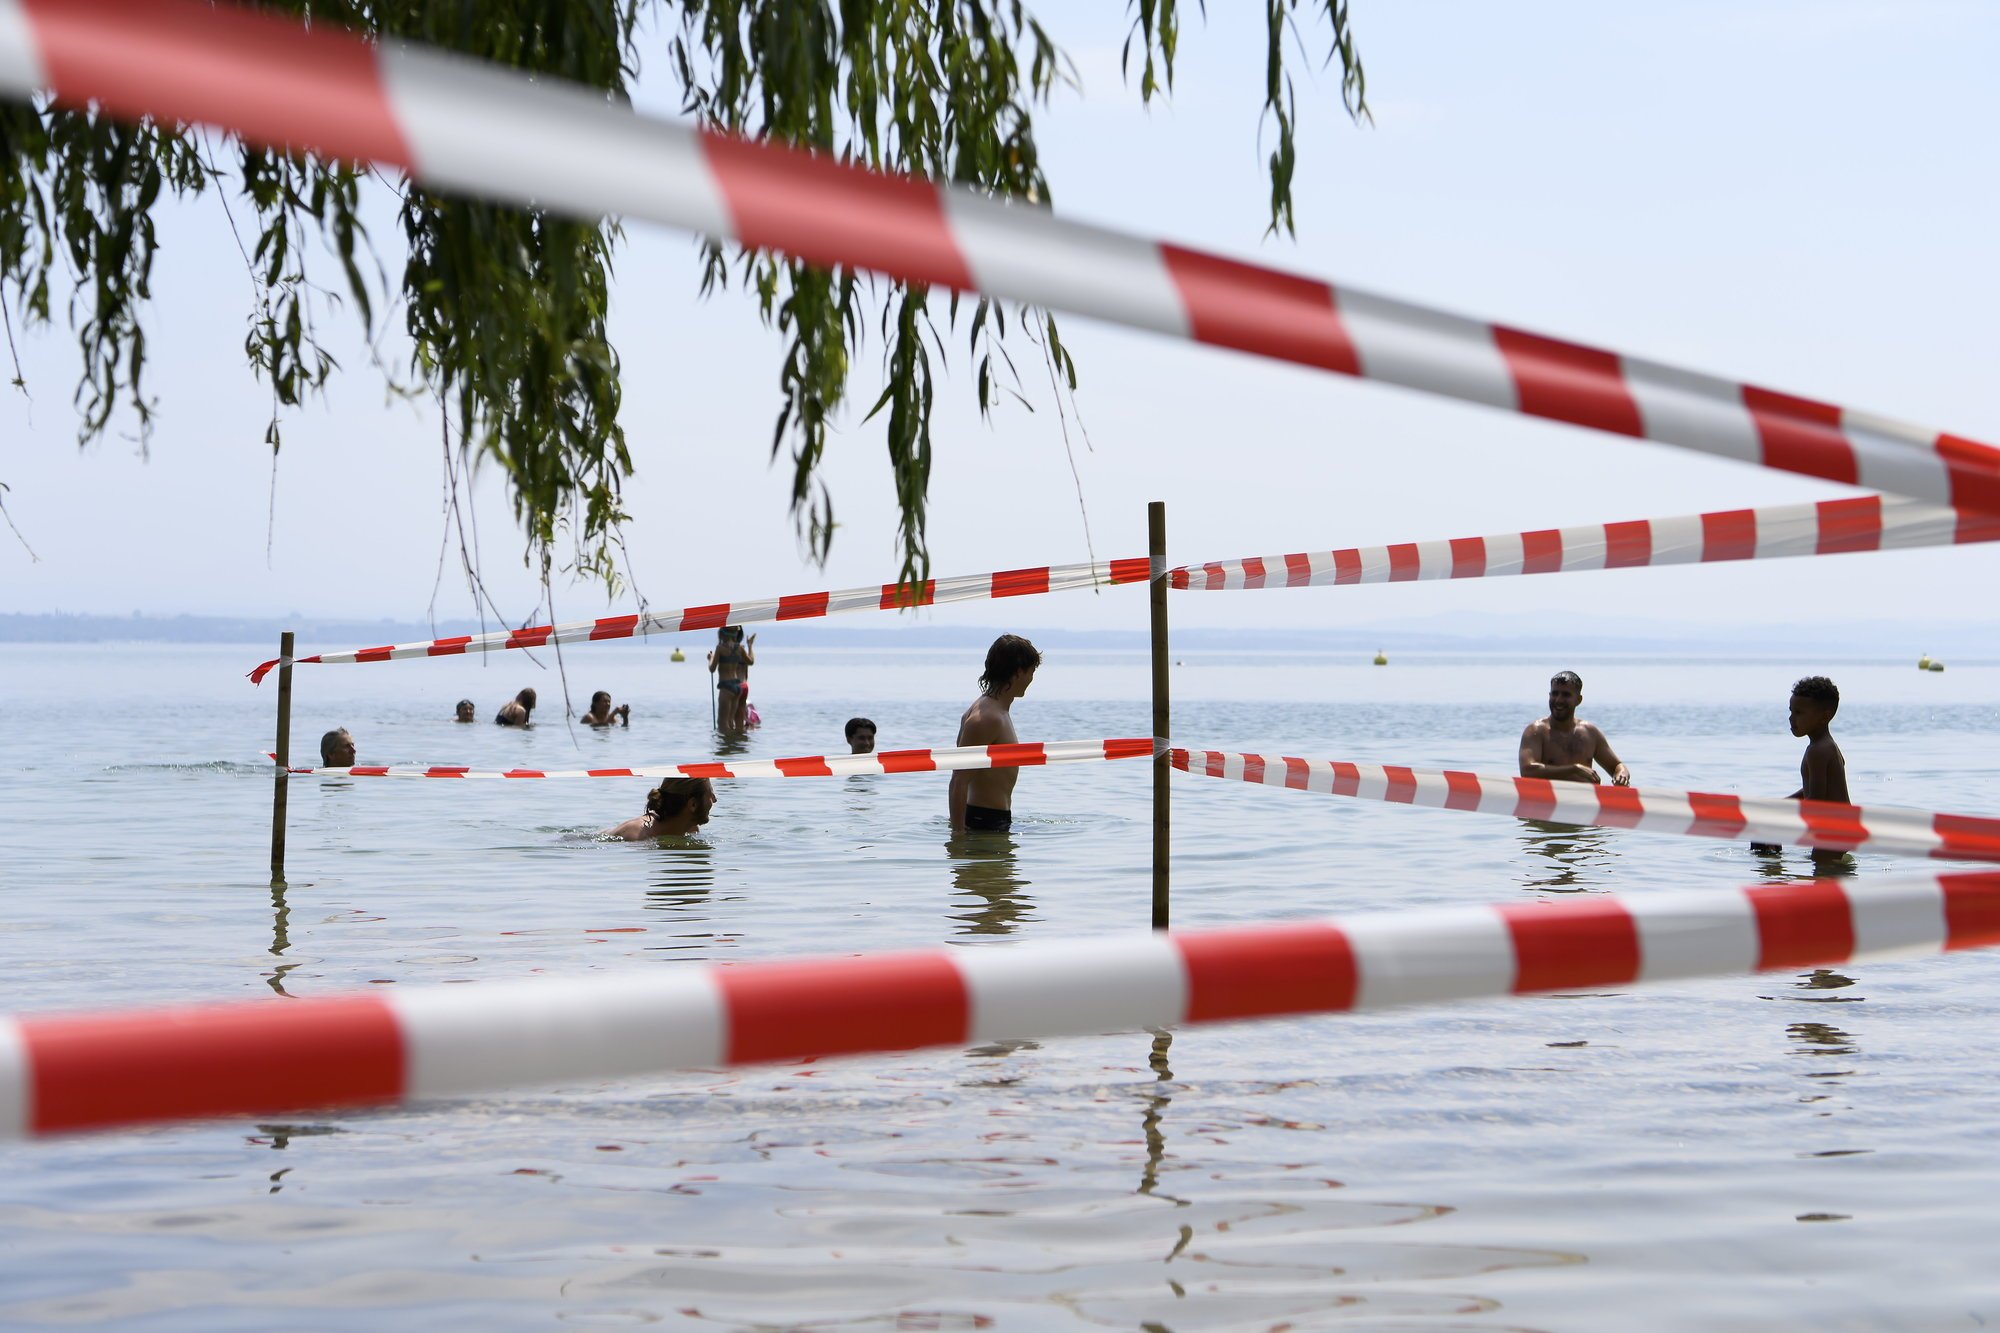 La baignade est à nouveau autorisée sur le territoire neuchâtelois. Mais la navigation reste proscrite et des restrictions s'appliquent localement, comme ici aux Jeunes-Rives, à Neuchâtel.